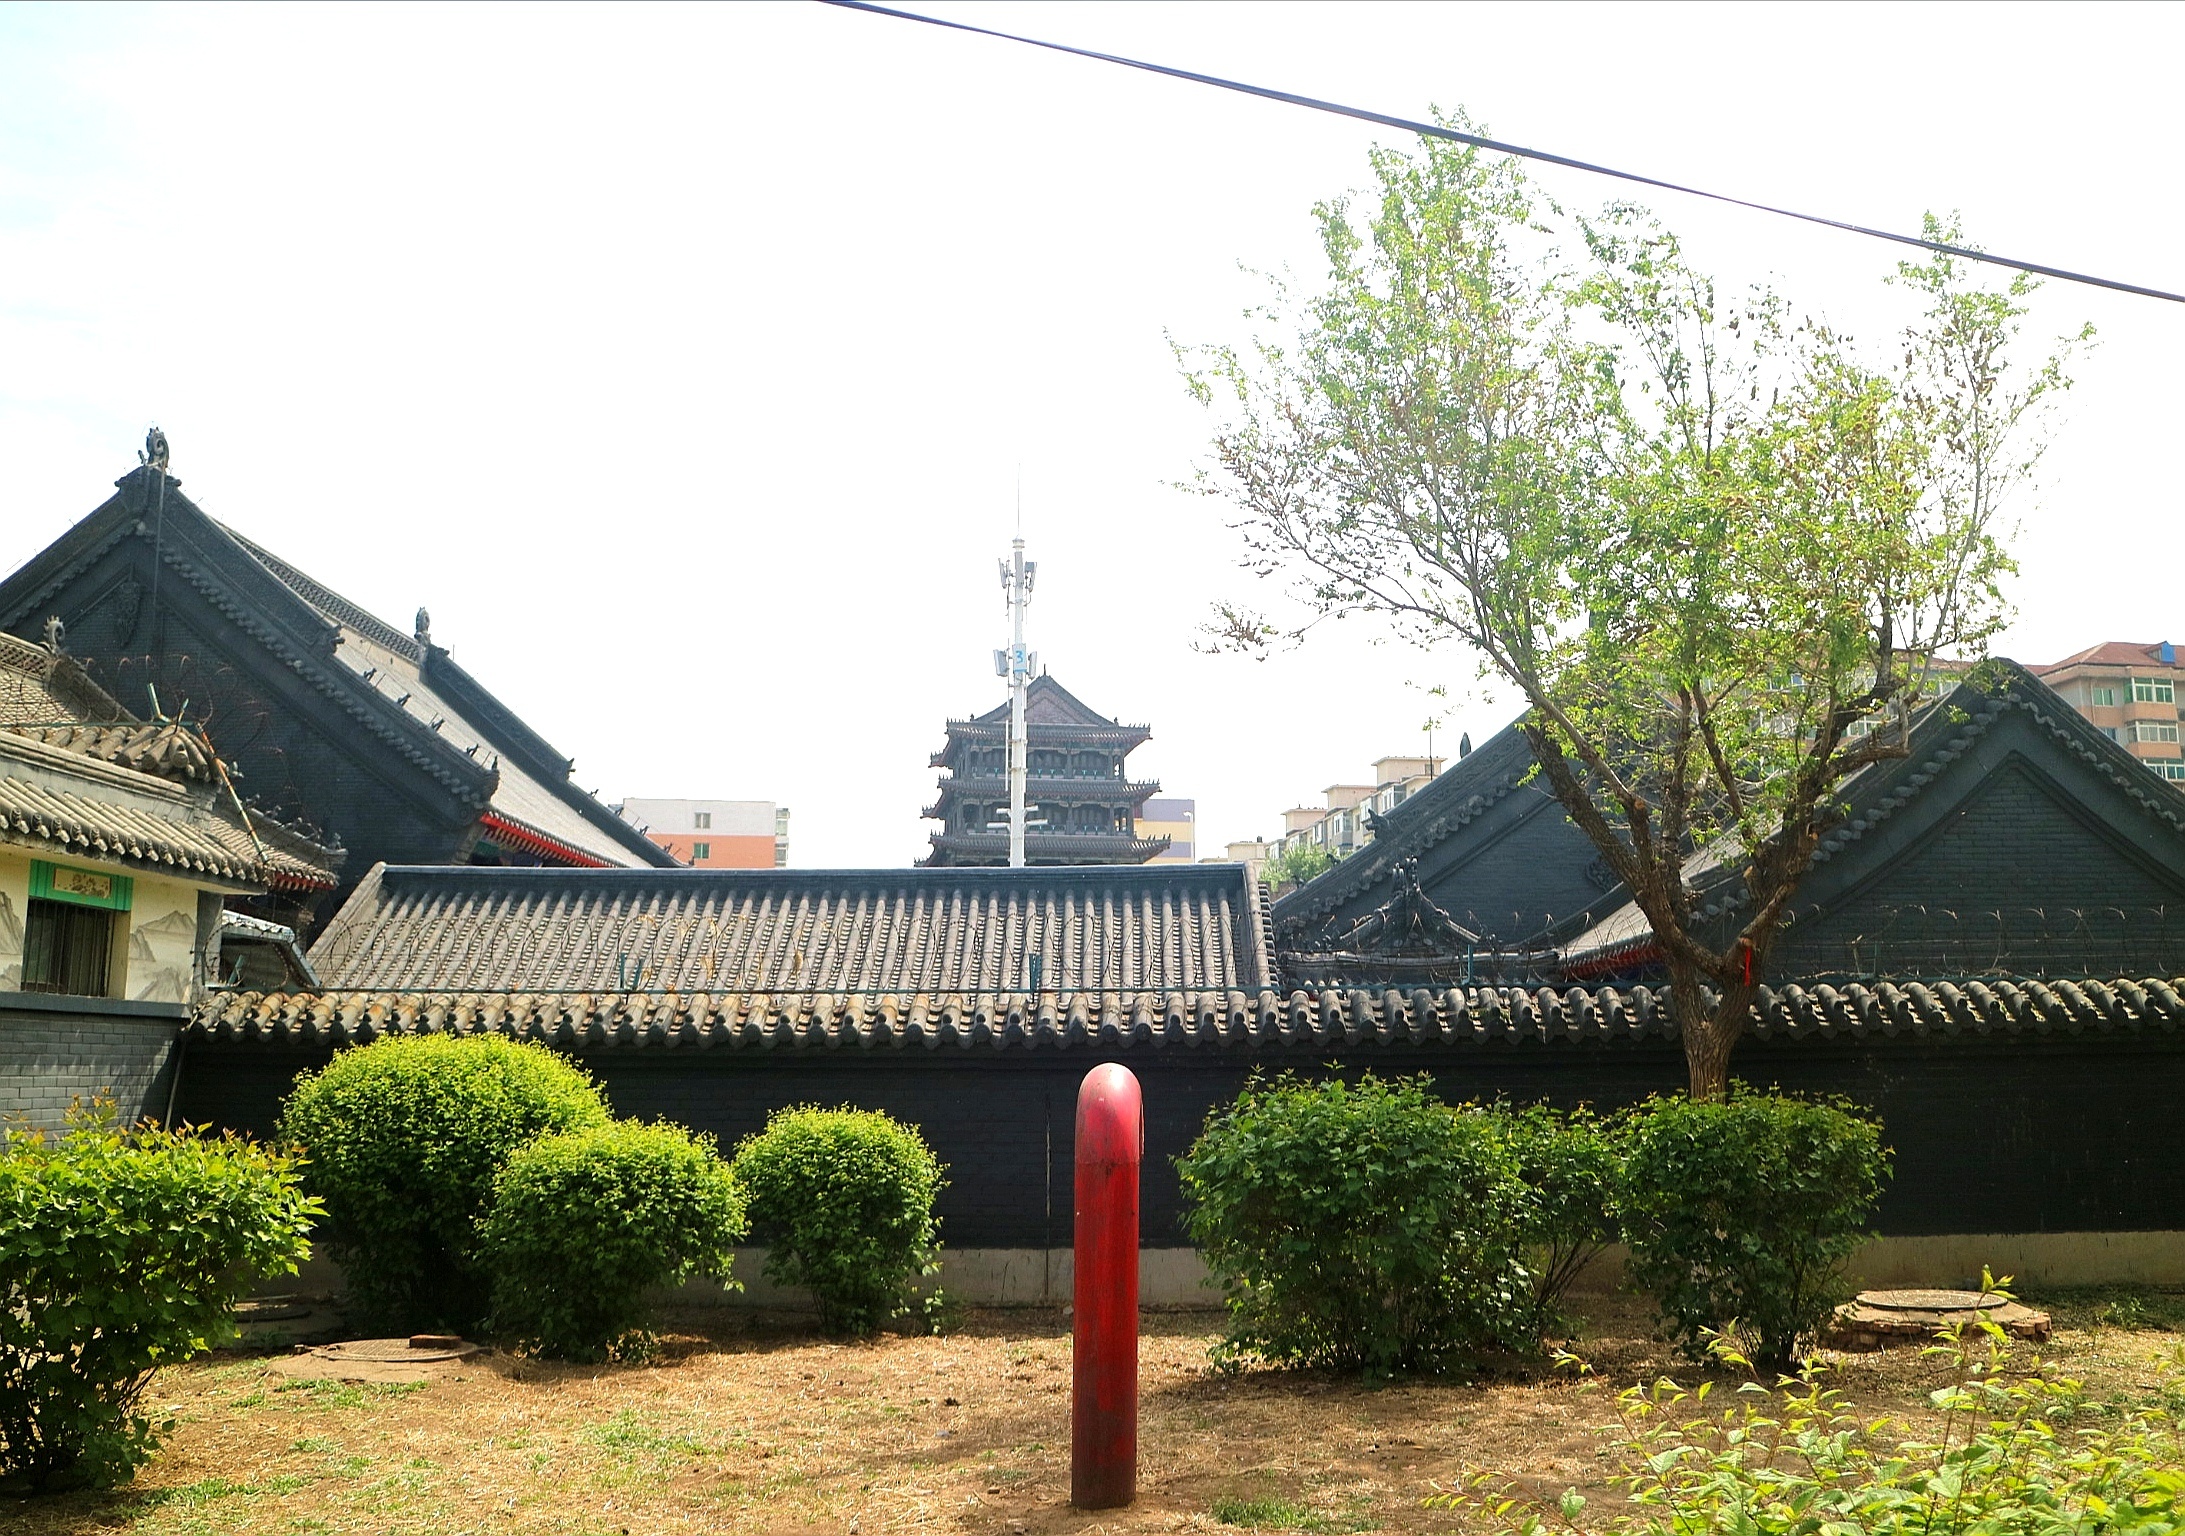 沈阳太清宫位于沈阳市，原名三教堂。今天闲来无事就准备去看看